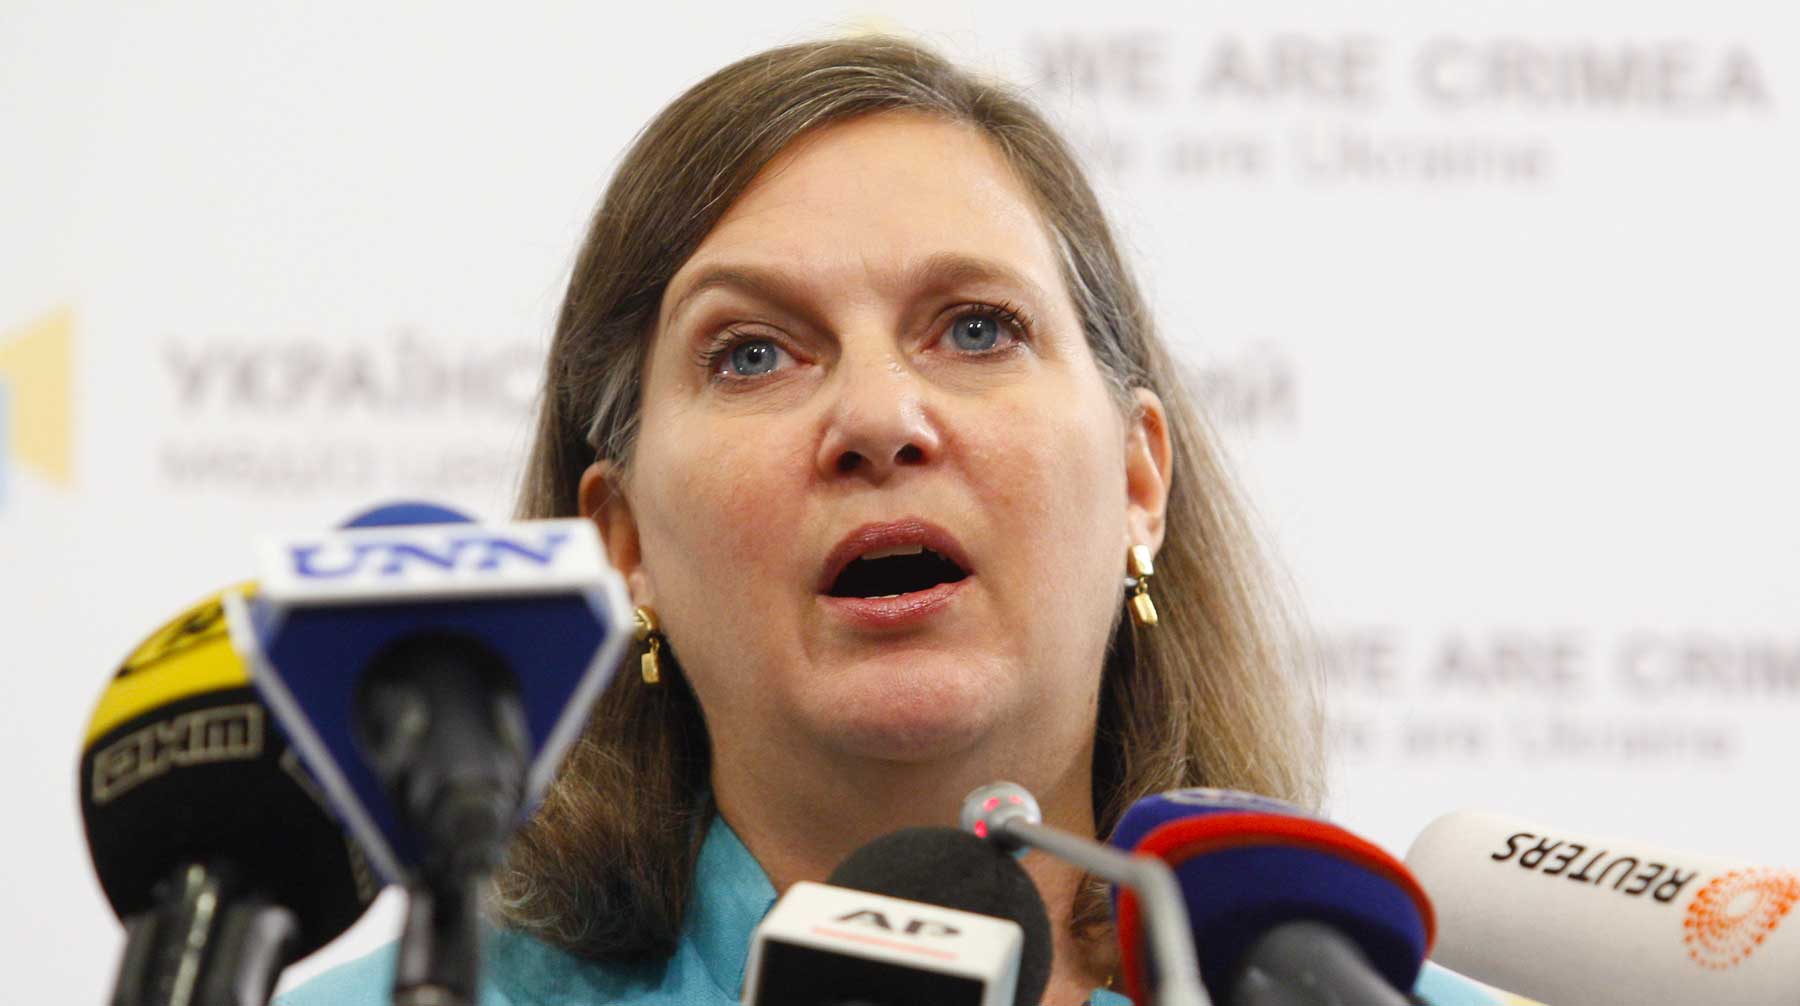 В МИД РФ объяснили отказ в выдаче российской визы бывшему помощнику госсекретаря США нахождением в «черных» списках Виктория Нуланд